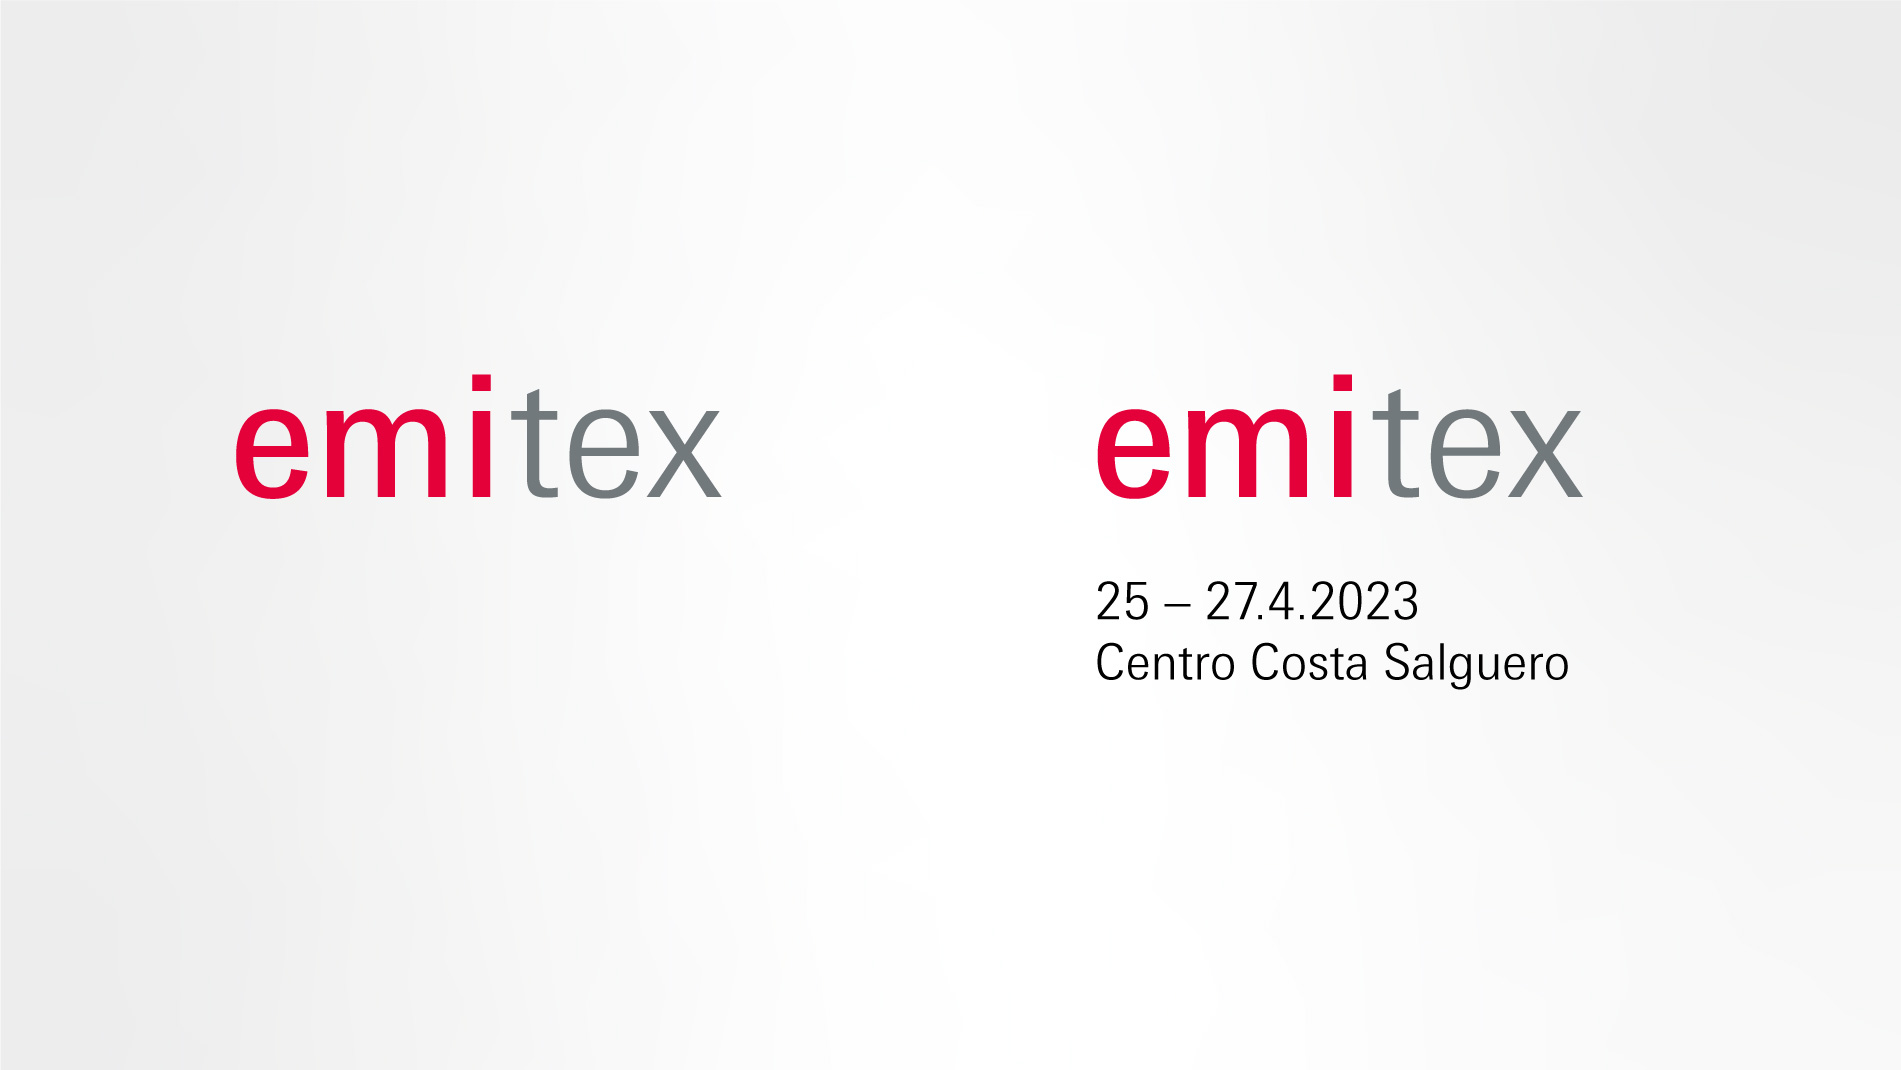 Emitex: Logos